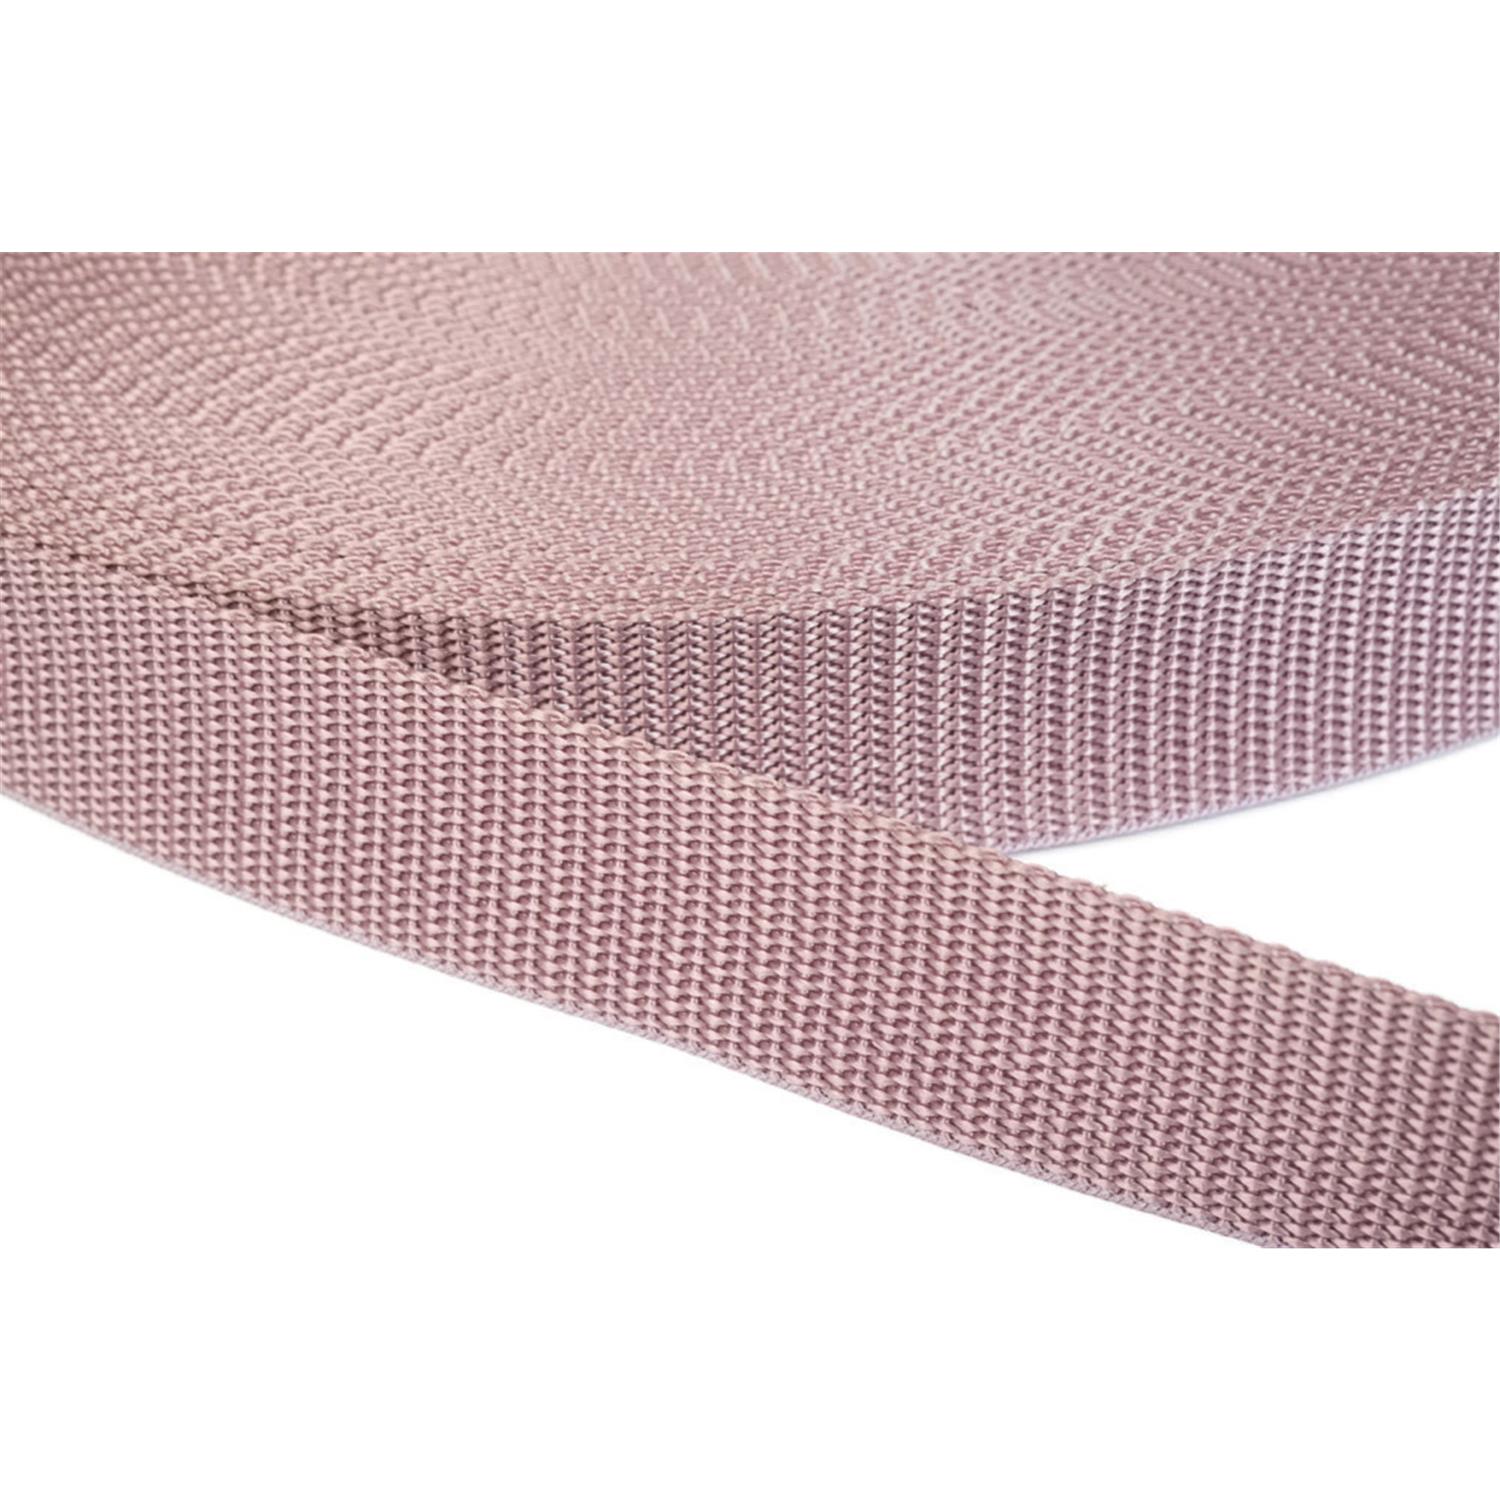 Gurtband 40mm breit aus Polypropylen in 41 Farben 15 - altrosa 12 Meter